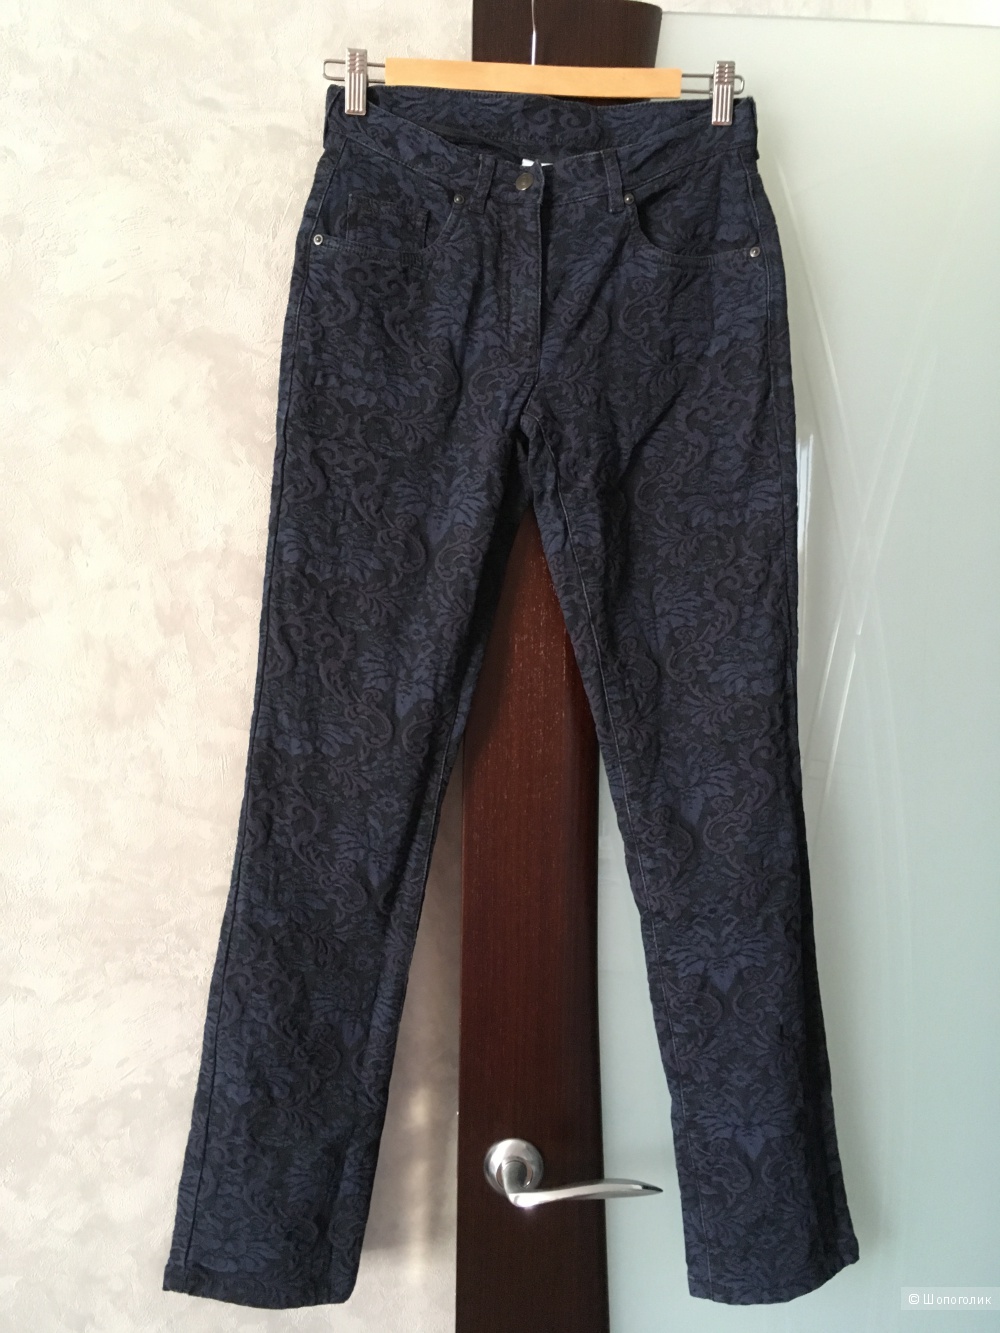 Жаккардовые джинсы Alba Moda, 34 нем размер, б/у